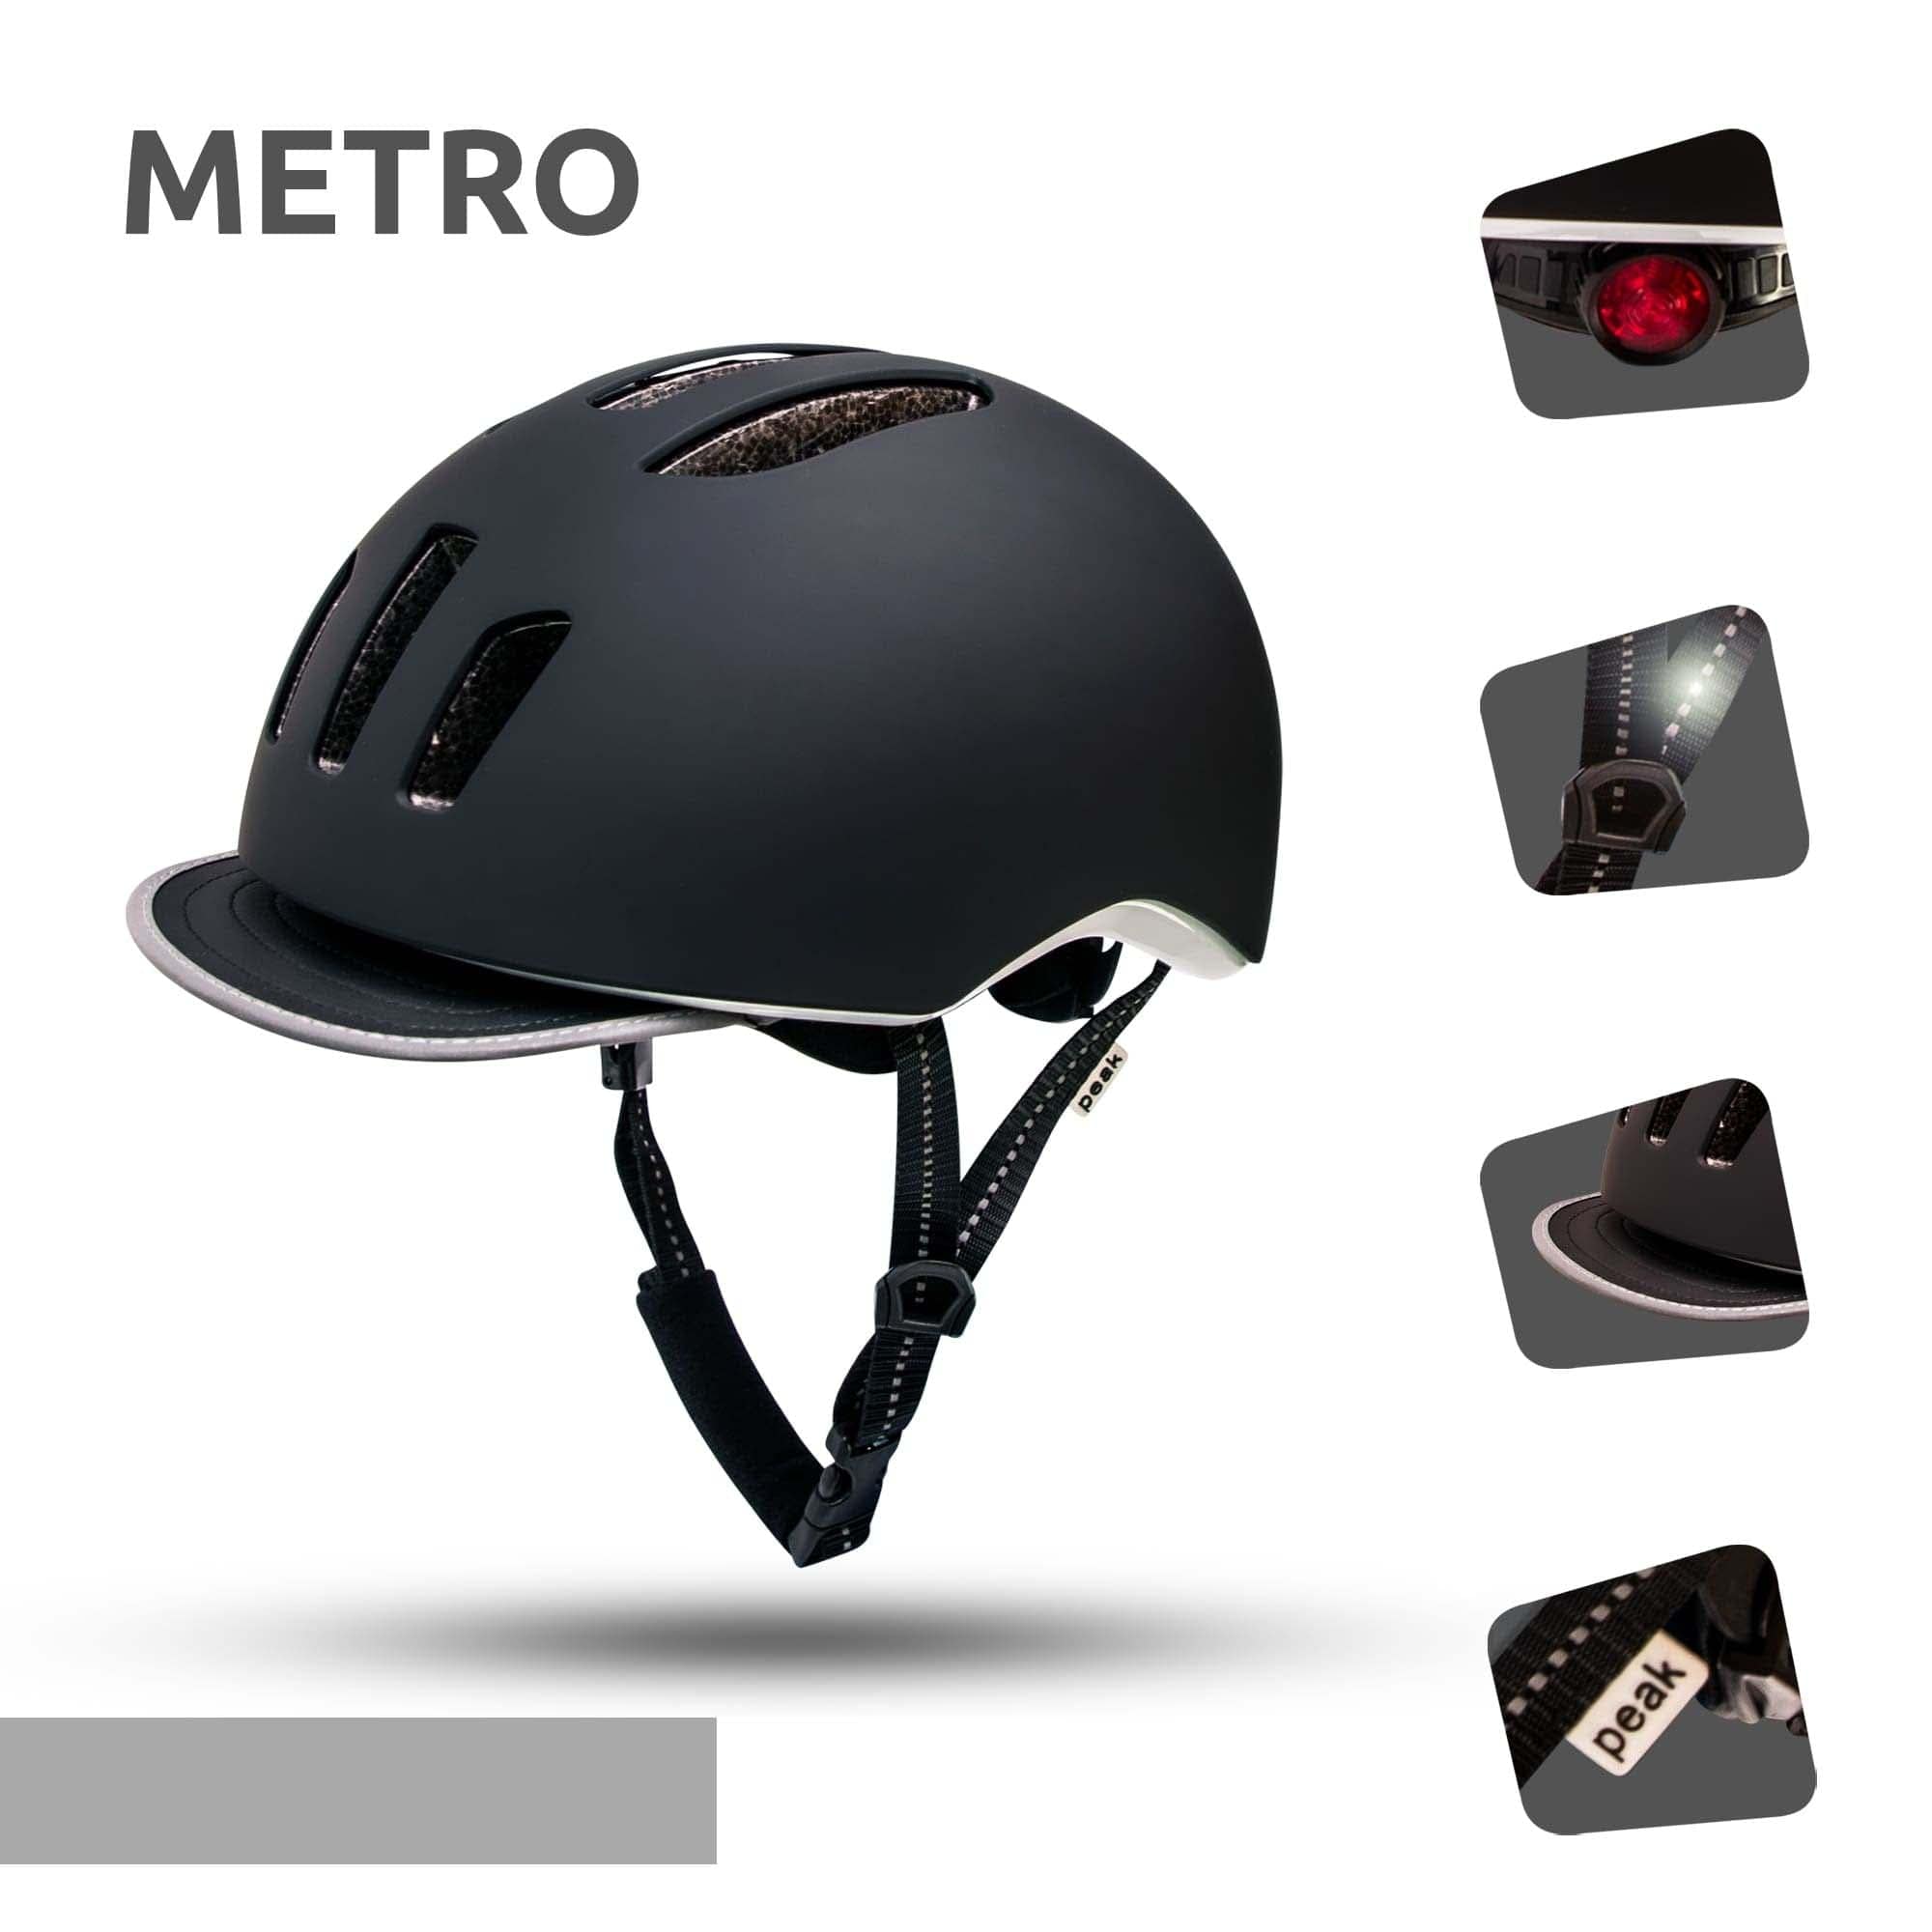 Casque de vélo Metro - Noir